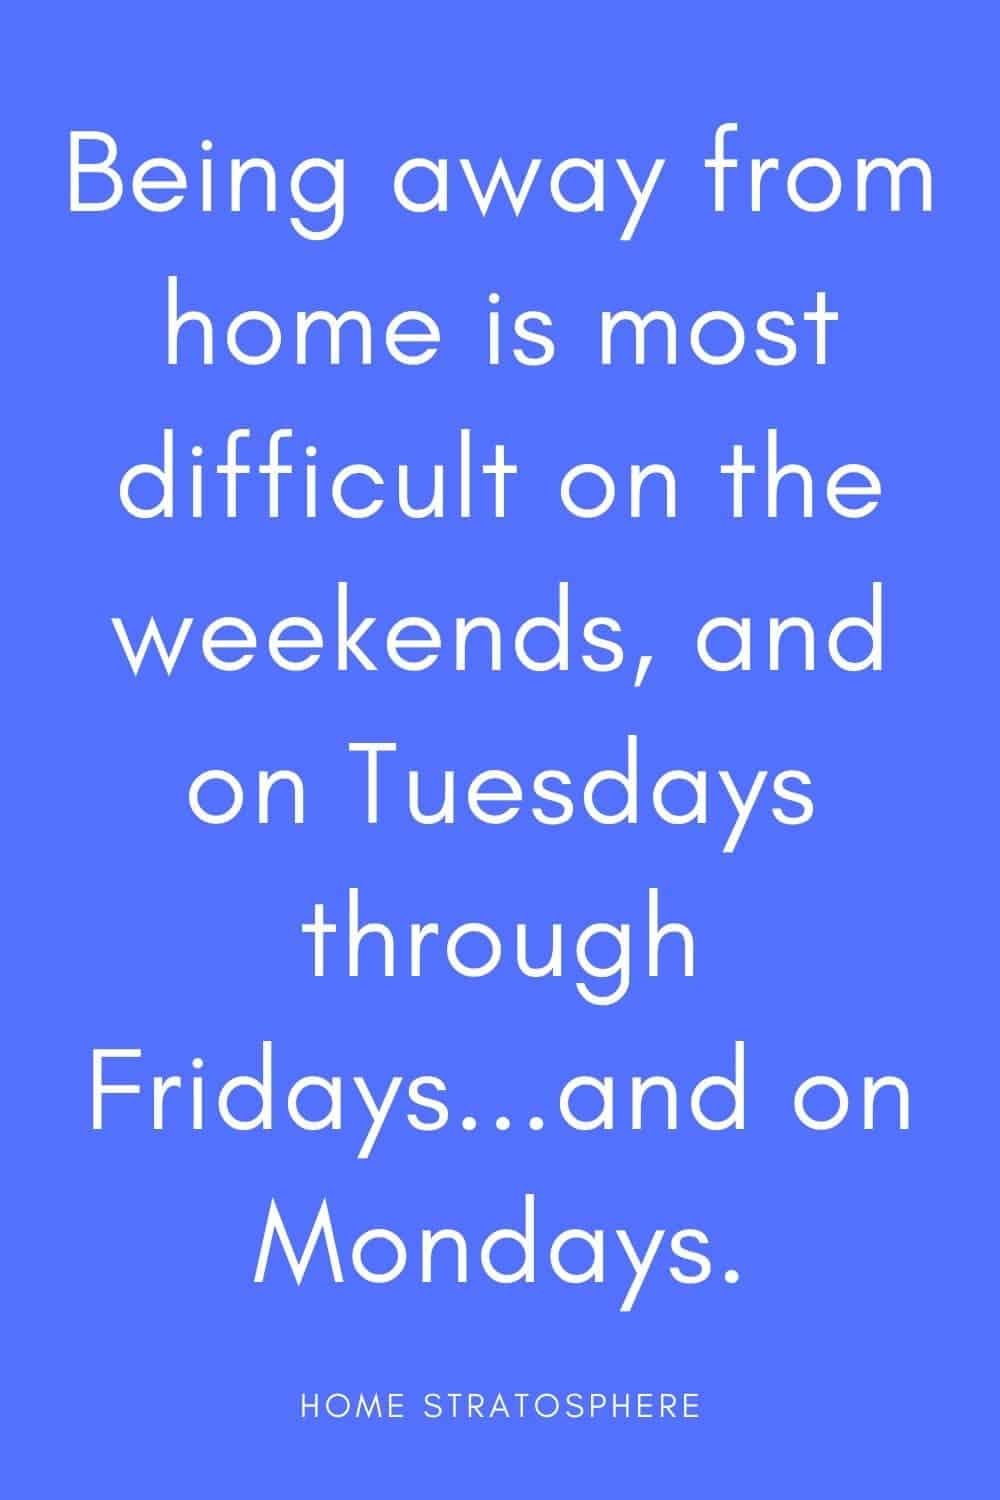 “周末离家是最困难的，周二到周五……还有星期一。”